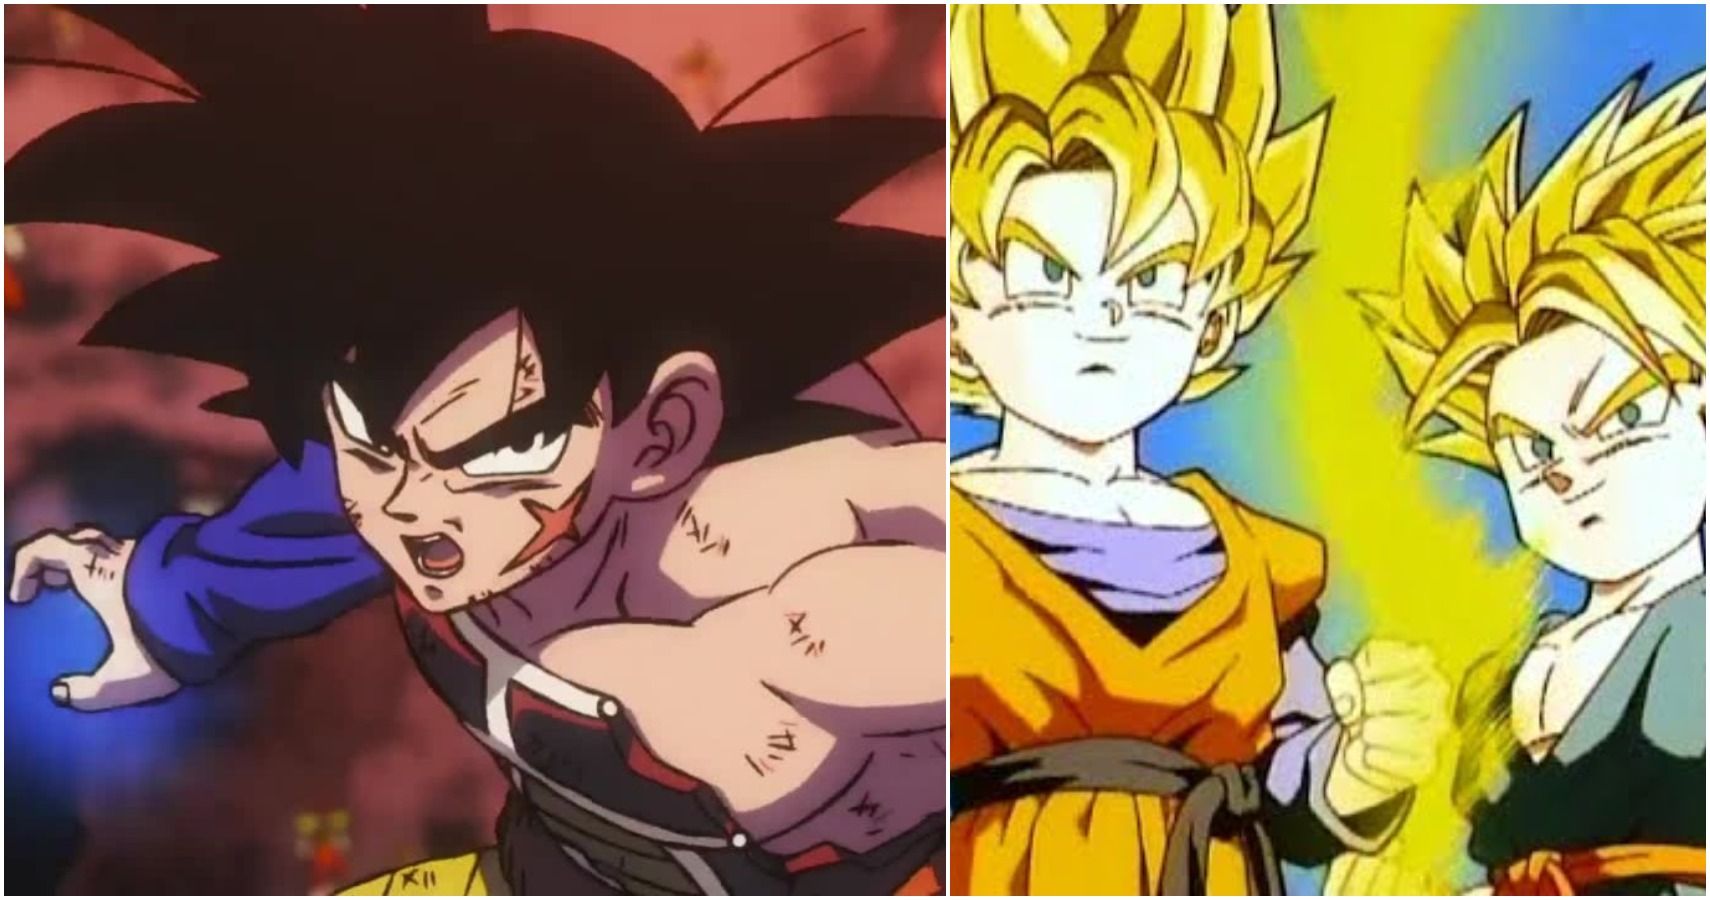 Goten de Dragon Ball é mais parecido com Vegeta do que com Goku e